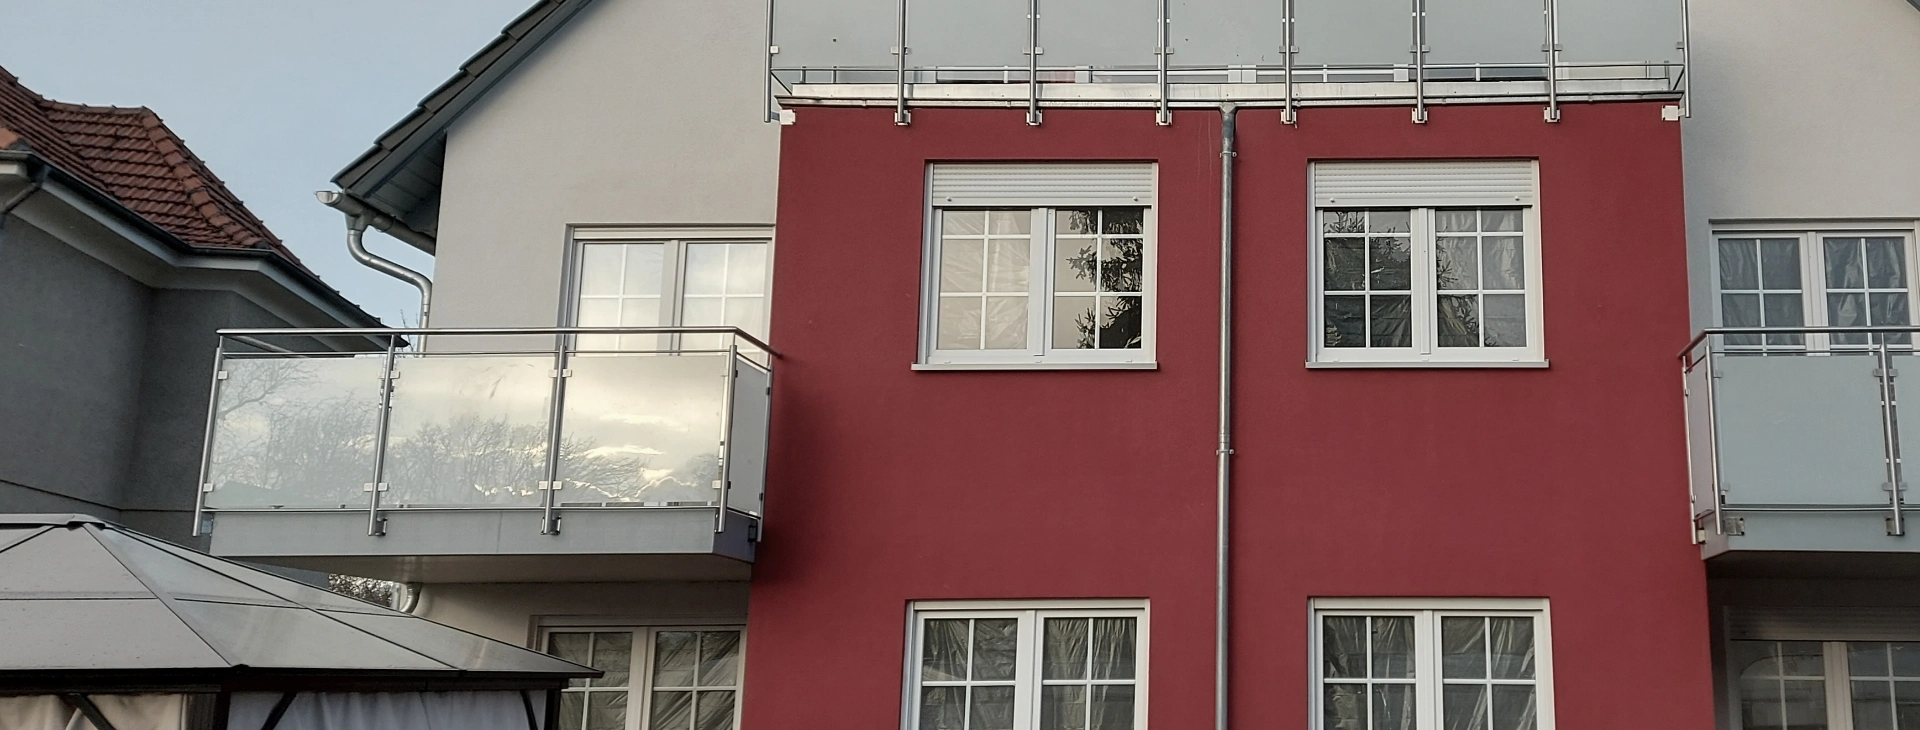 balustrady balkonowe z metalowymi elementami